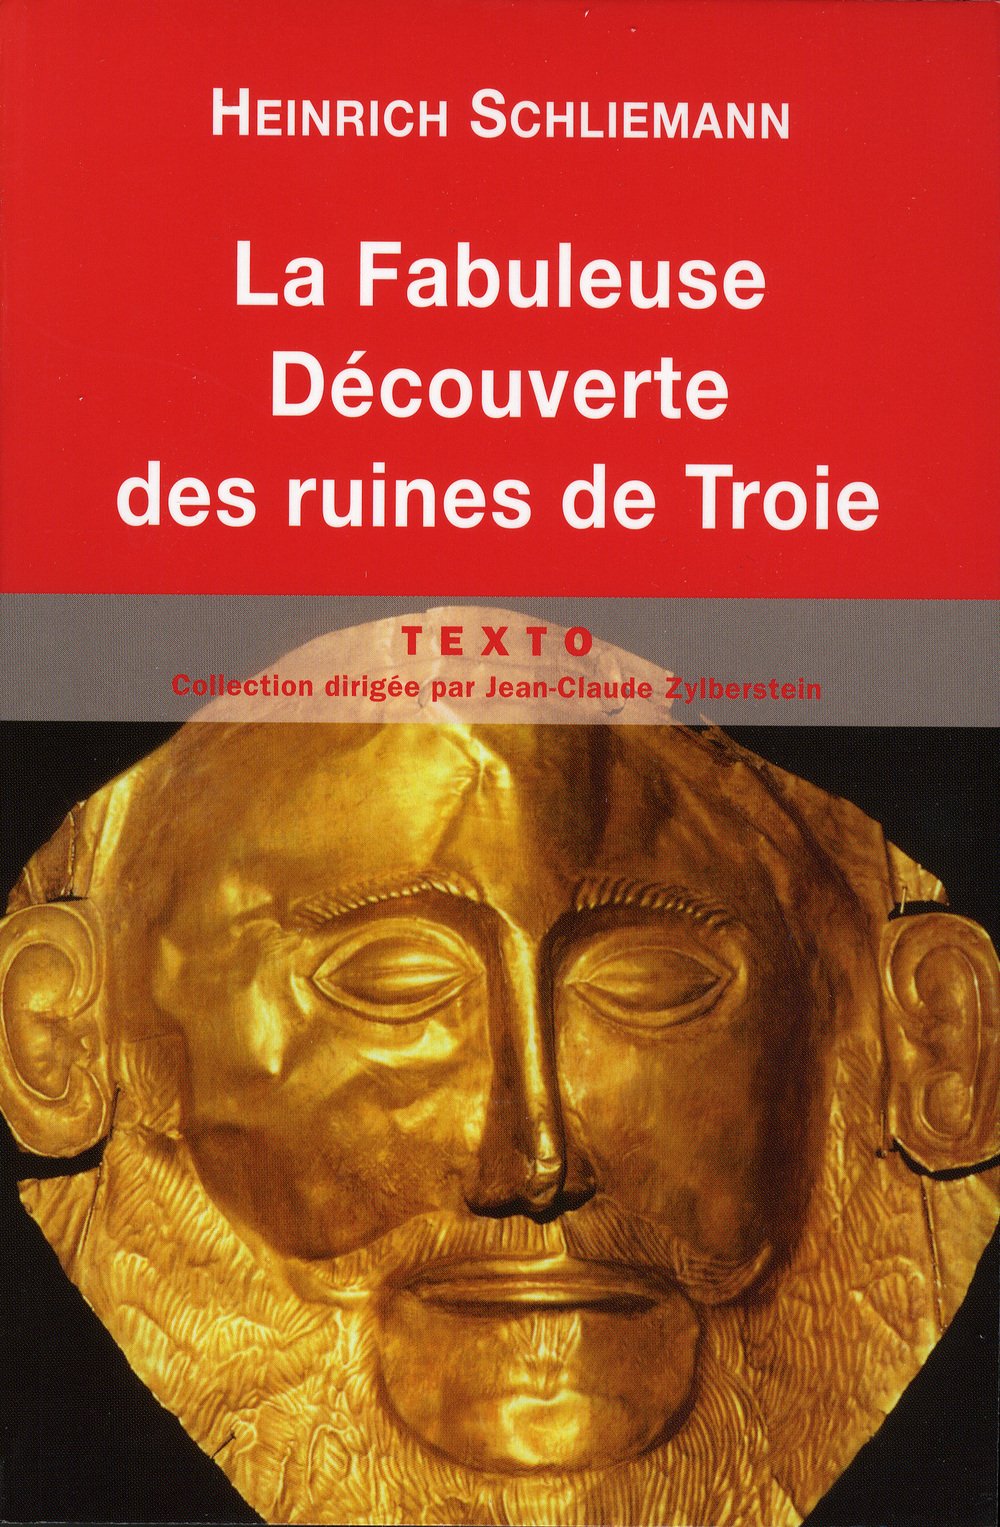 La fabuleuse découverte des ruines de Troie : Premier voyage à Troie (1871) suivi de Antiquités troyennes (1871-1873), 2011, 280 p.